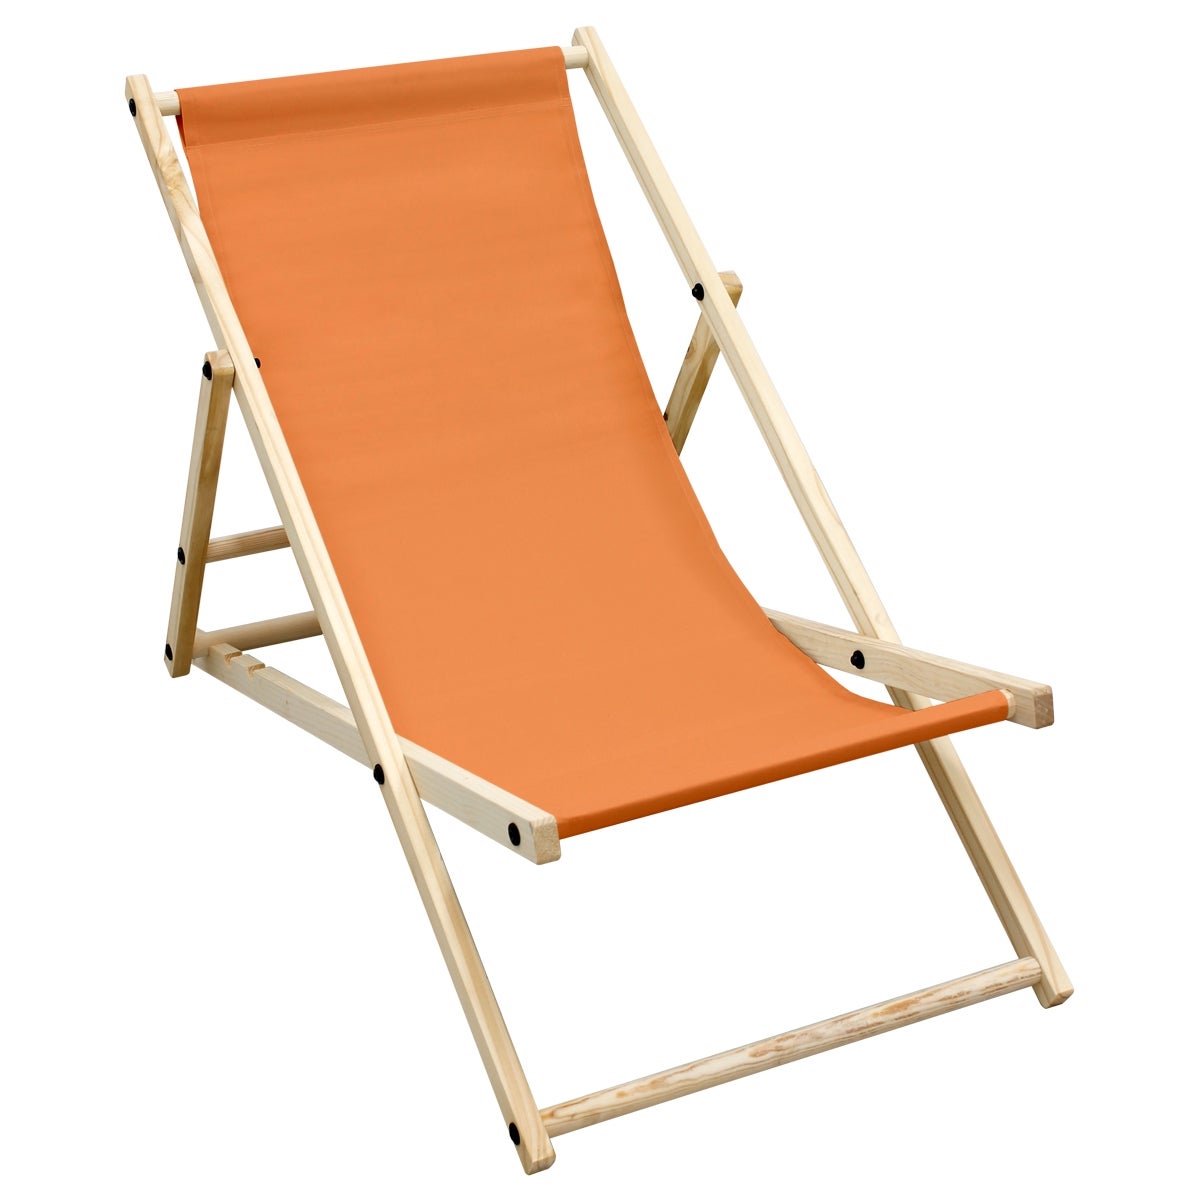 ECD Germany Liegestuhl klappbar aus Holz - 3 Liegepositionen - bis 120 kg - Orange - Sonnenliege Gartenliege Relaxliege Strandliege Liege Strandstuhl Klappliegestuhl Holzklappstuhl Strandliegestuhl